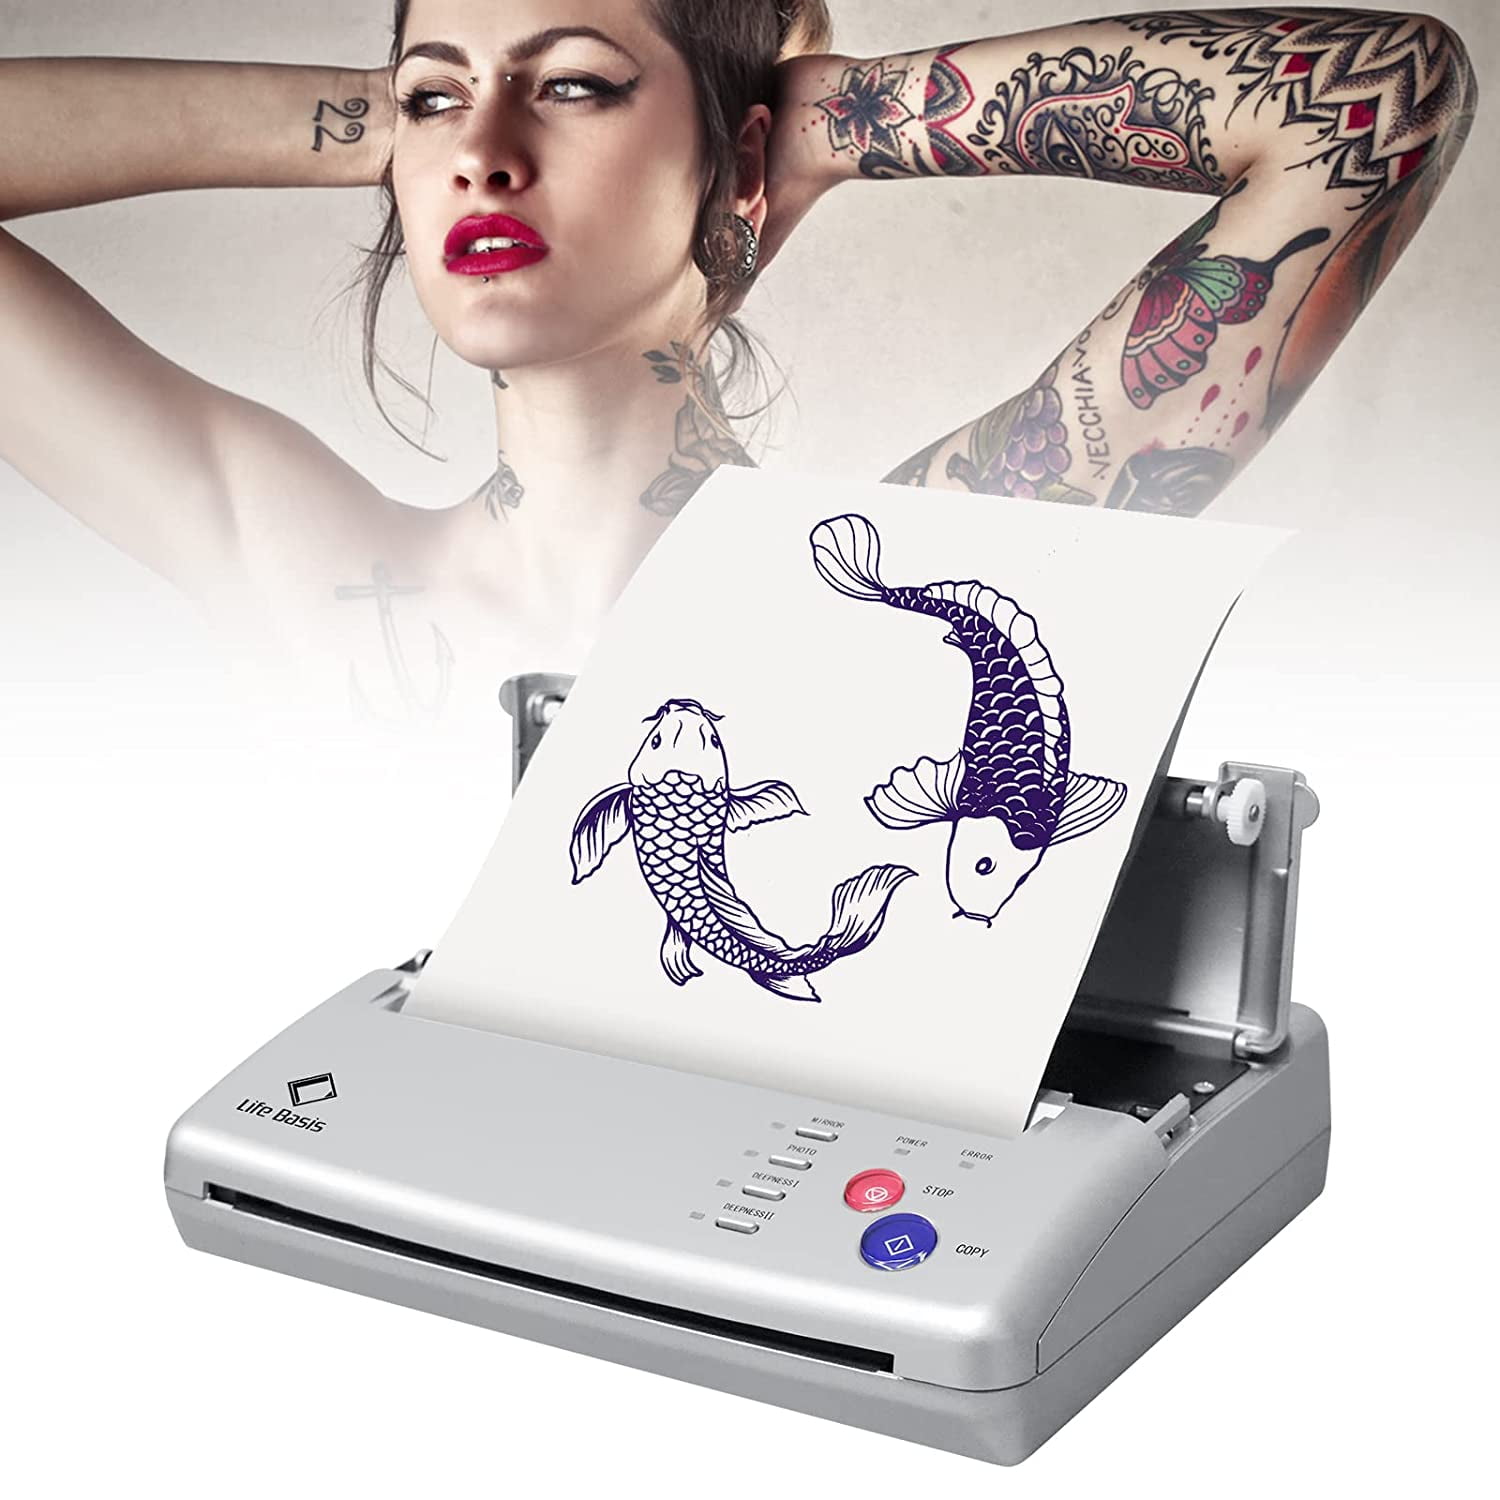 CORIEOSD Tattoo Transfer Stencil Machine with 20 Free Thermal Tattoo Kit  Copier Printer Tattoo Transfer Stencil Paper Tattoo Stencil Printer Machine